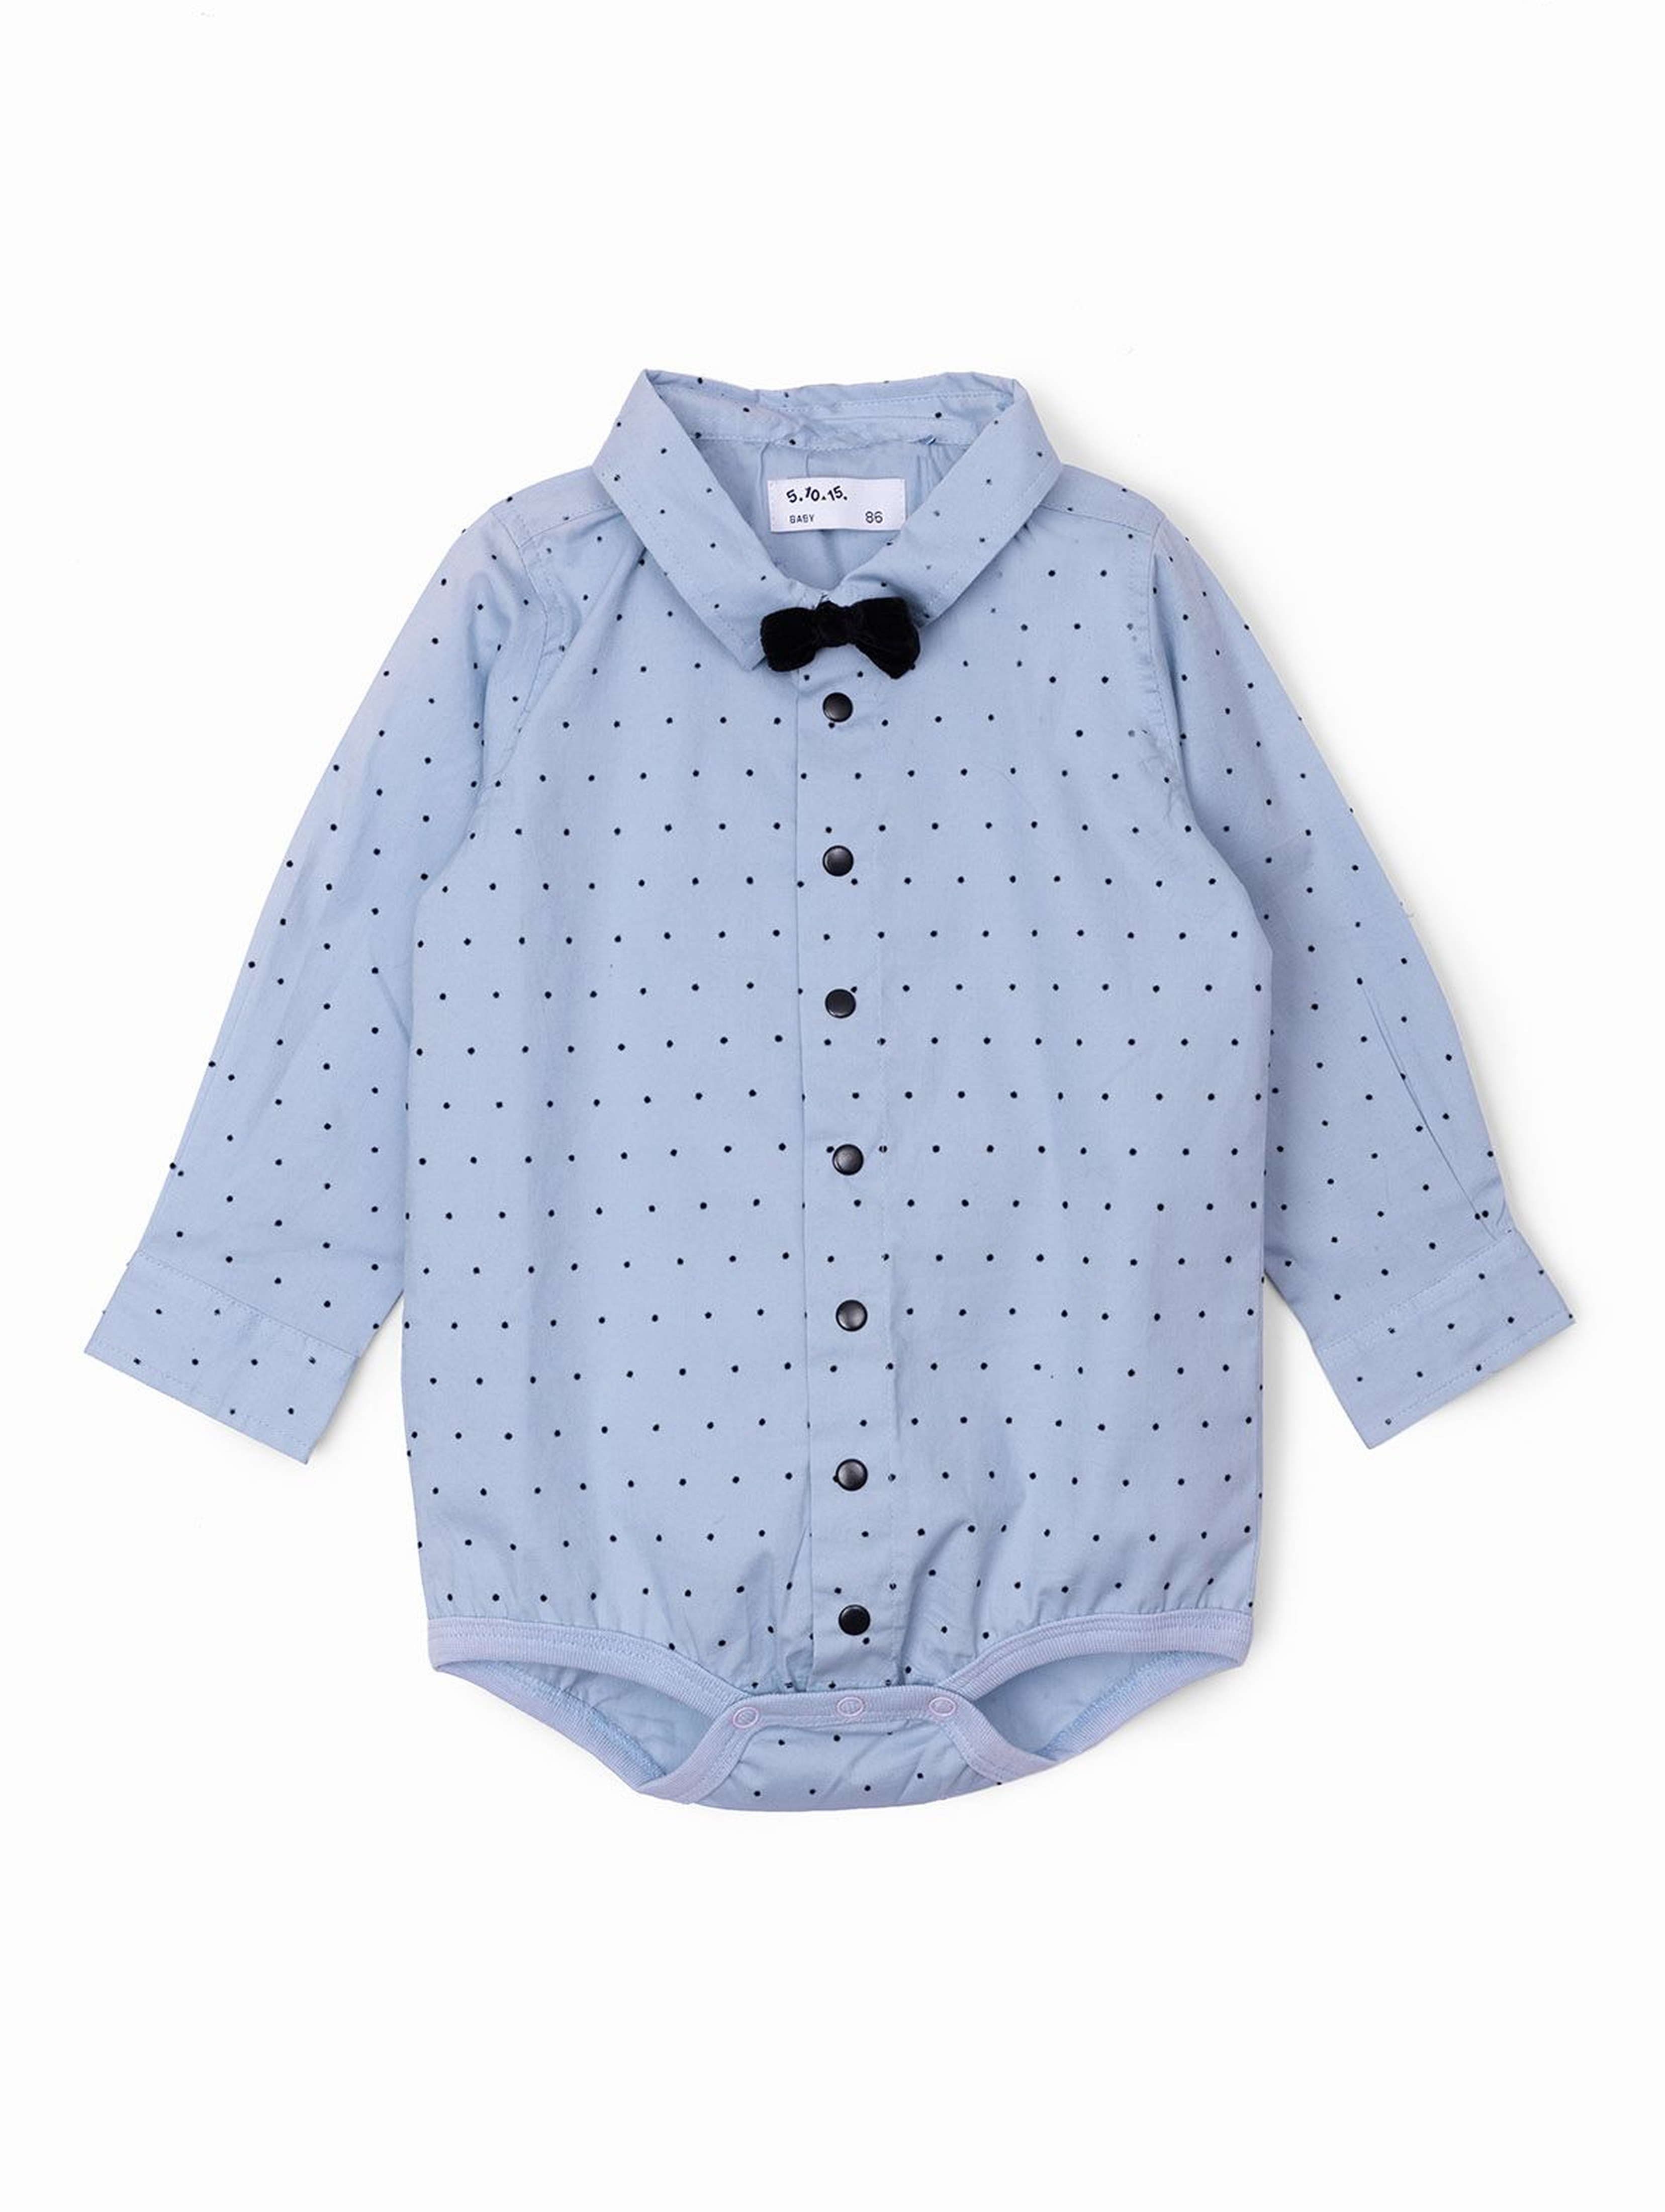 Eleganckie koszulowe body niemowlęce w kropeczki - niebieskie